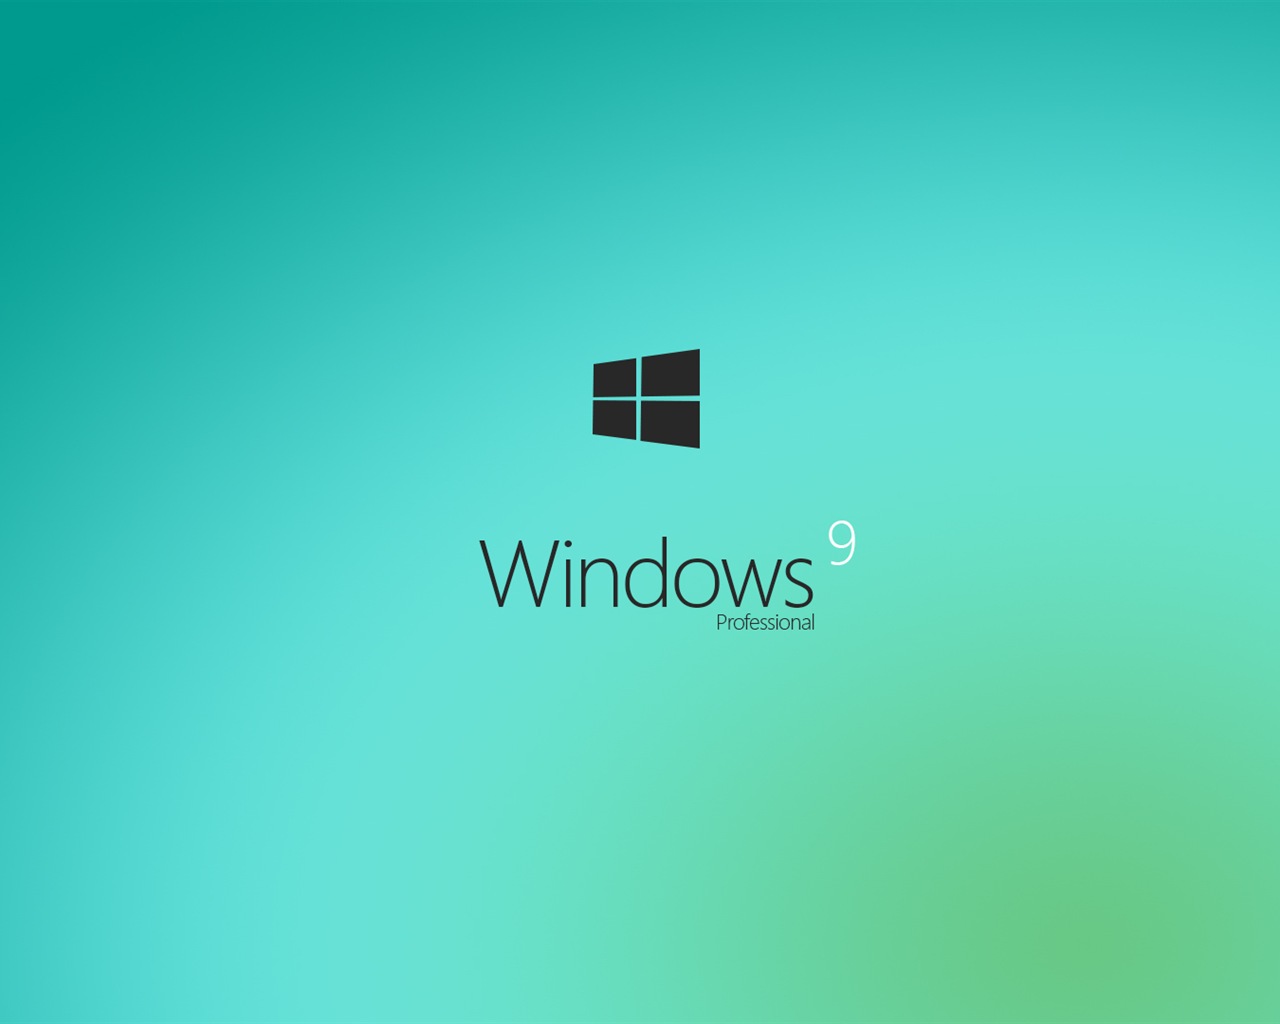 微软 Windows 9 系统主题 高清壁纸3 - 1280x1024